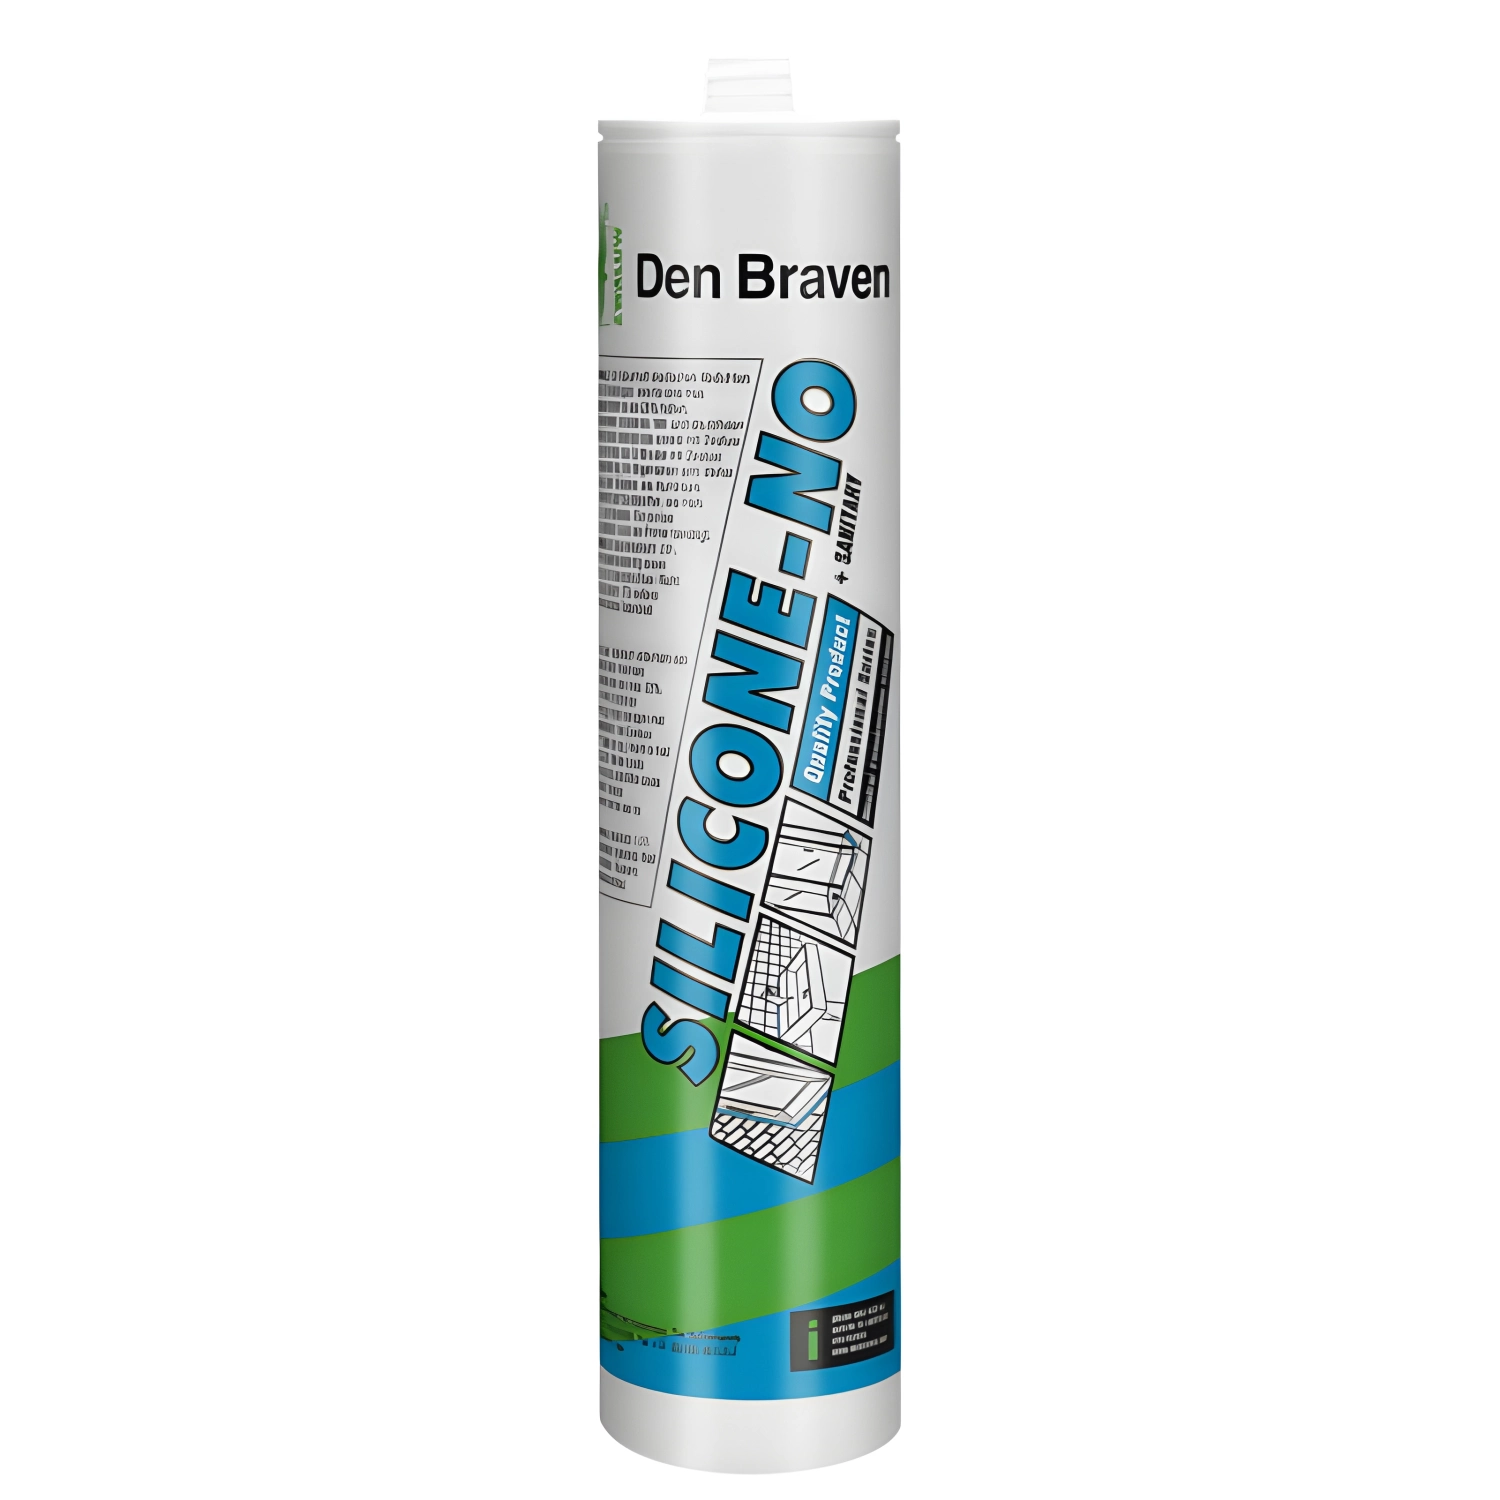 Zwaluw Den Braven 30618904 - Silicone-NO + Sanitary Silicone Kit - Blanc - 310ml